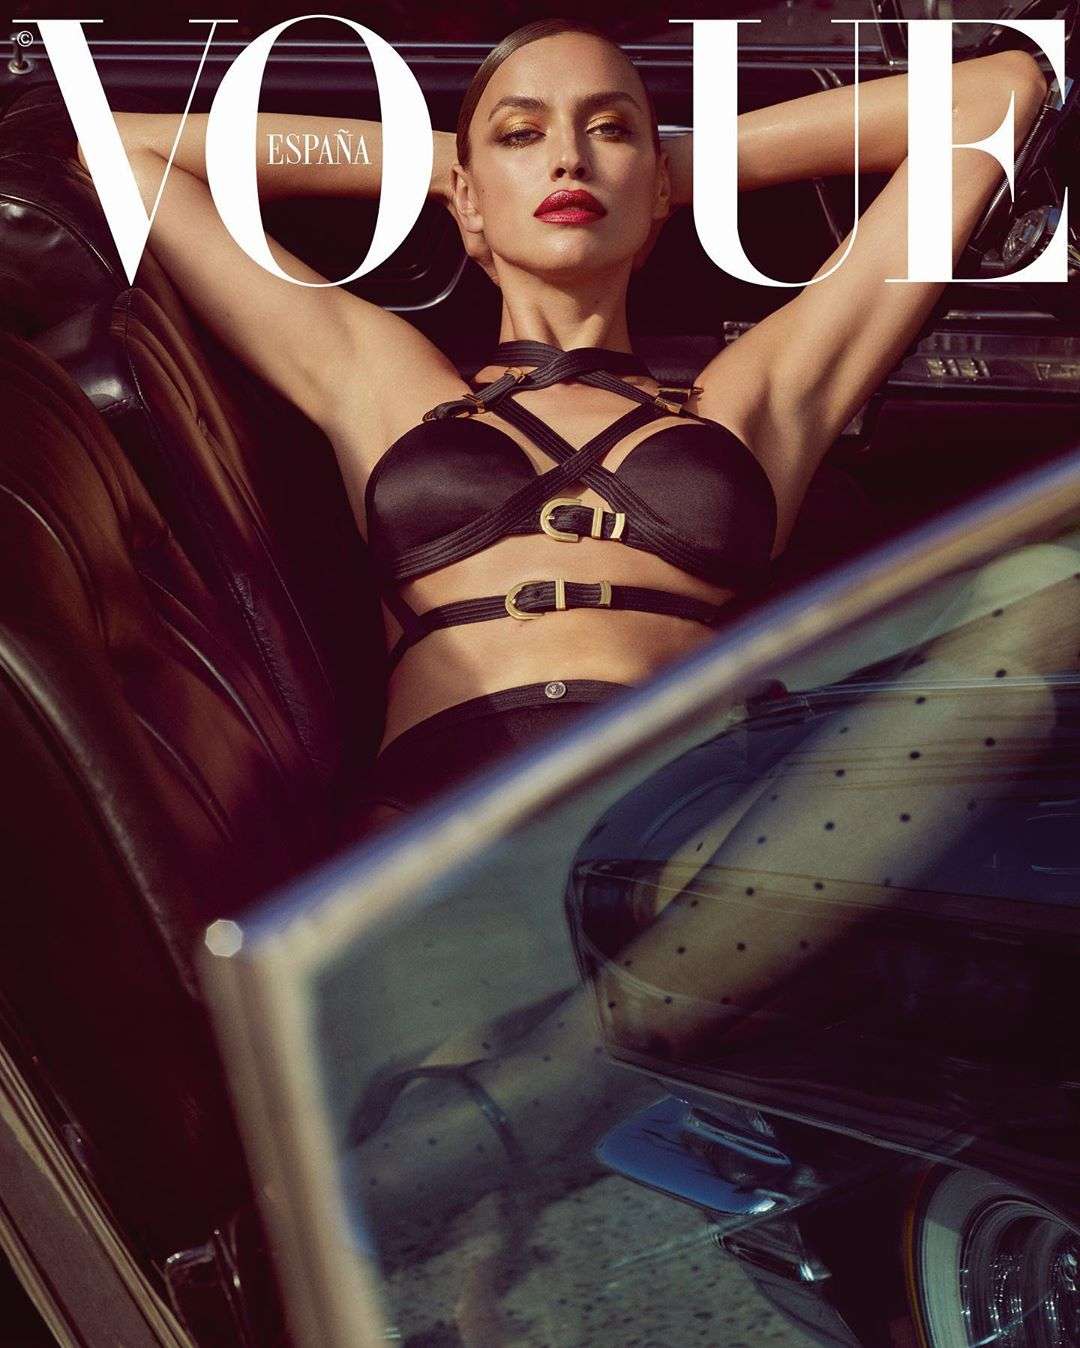 Сексапільні Ірина Шейк та Адріана Ліма вразили фотосесією в стилі БДСМ для журналу Vogue - фото 442402